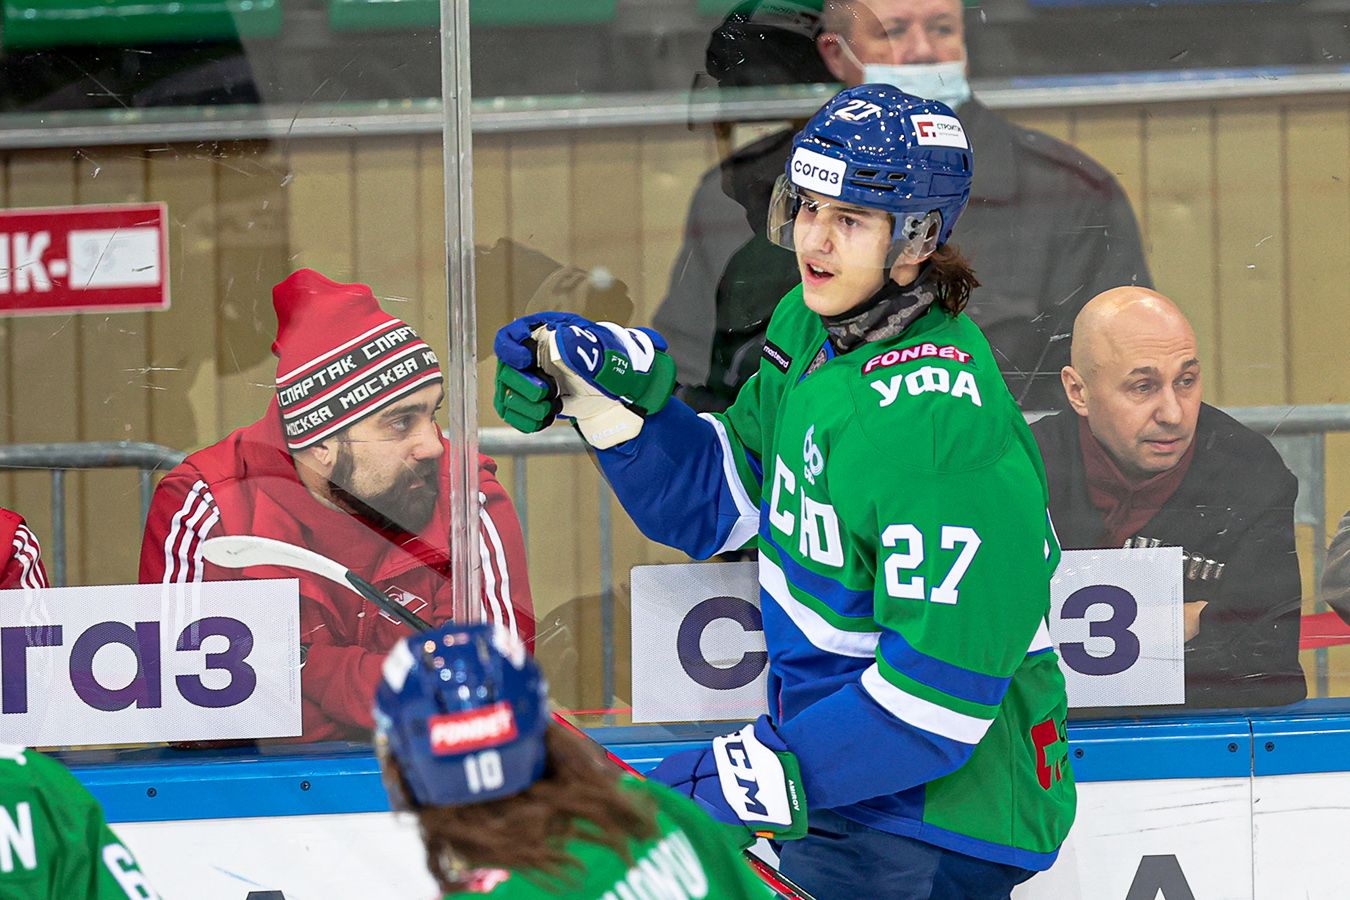 Победившего болезнь русского таланта ждут в НХЛ. Как быть с арендой Амирова в «Салавате»?